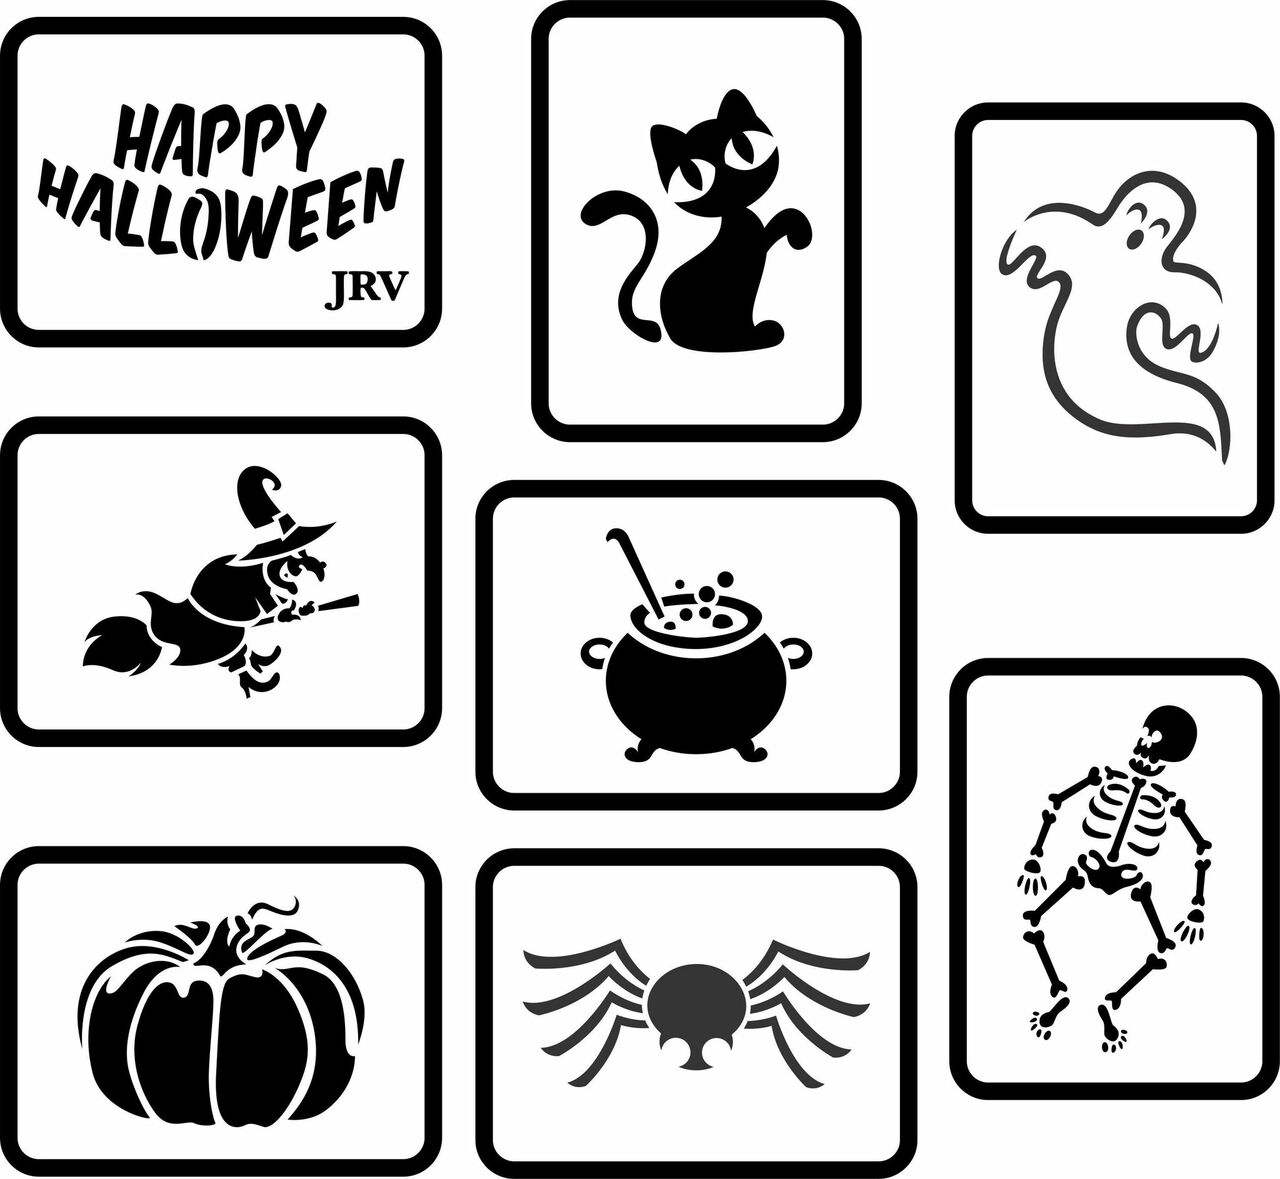 JRV Halloween Mini Set Stencil